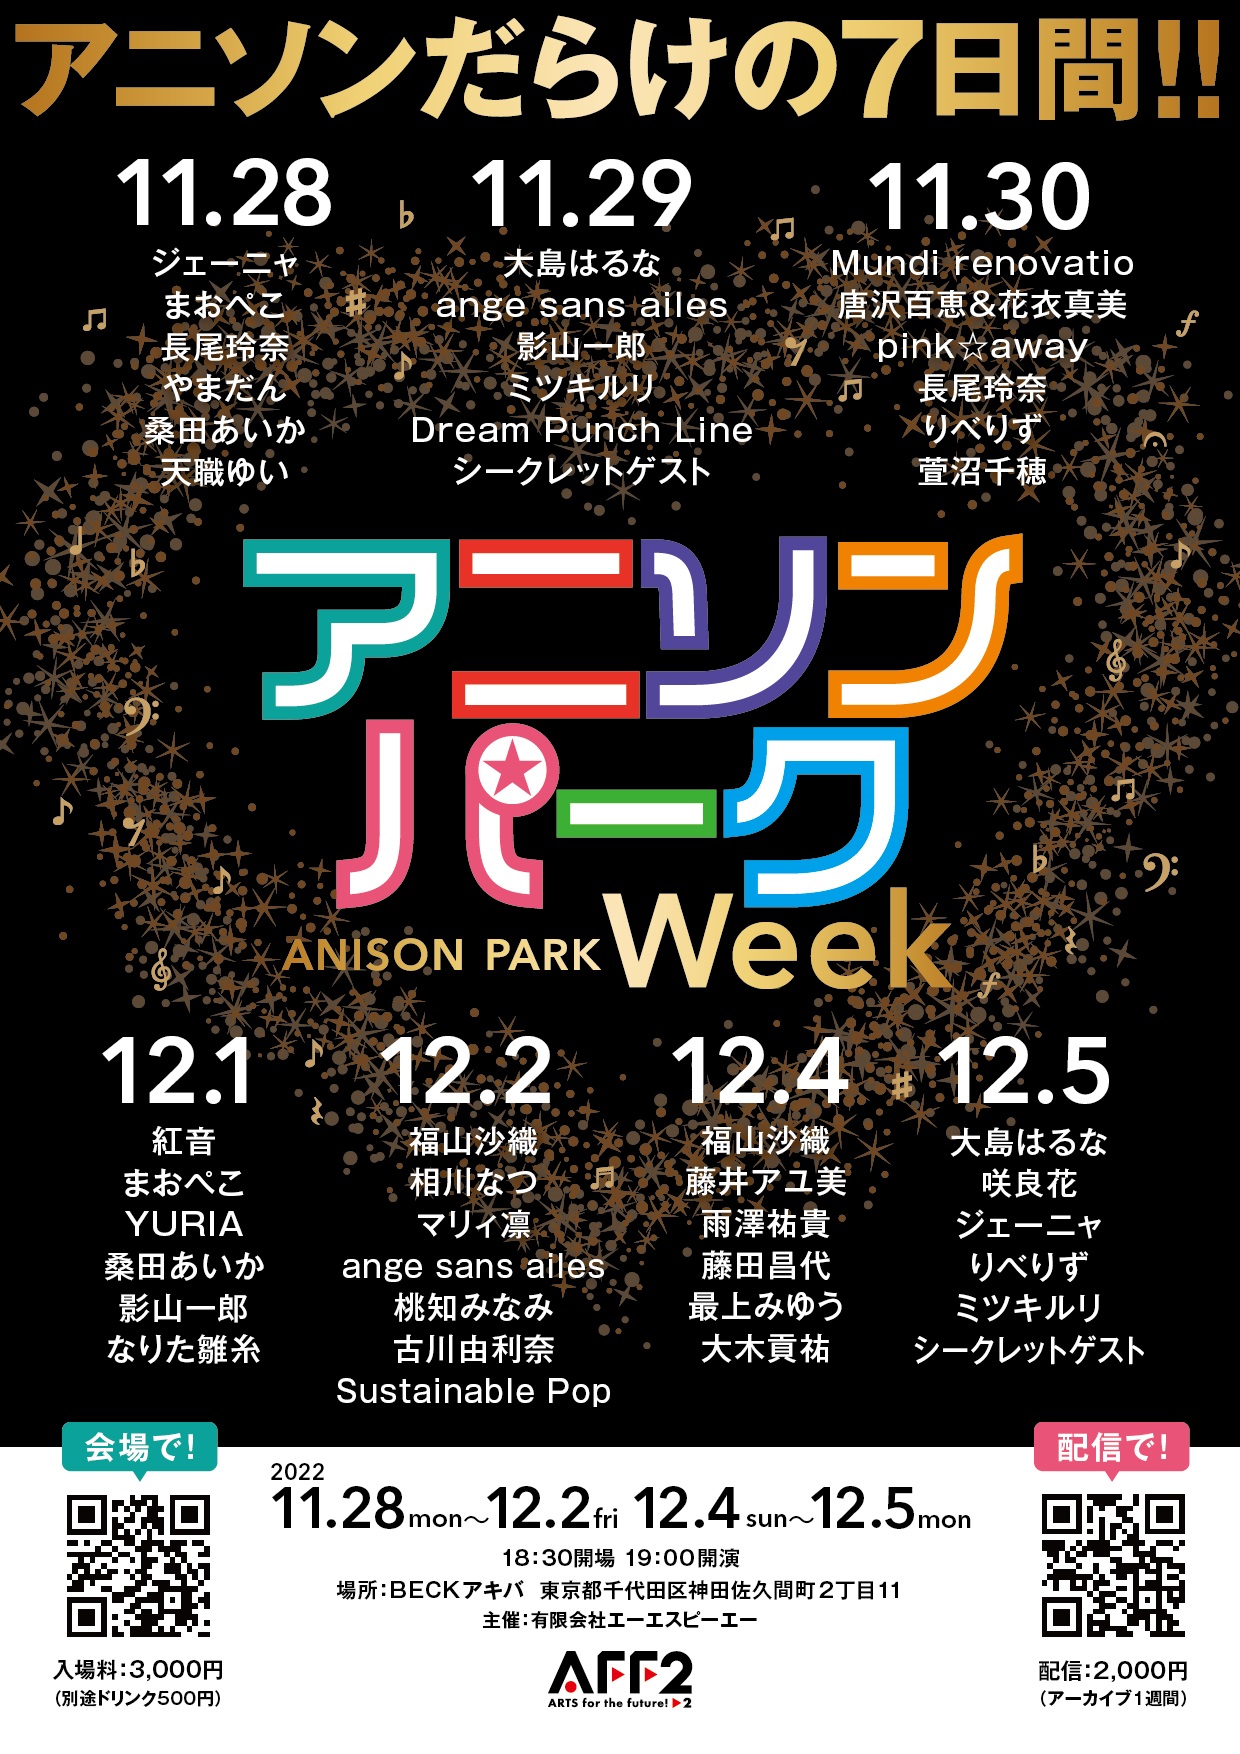 12月2日(金) 「アニソンパーク・week」に出演します!!!